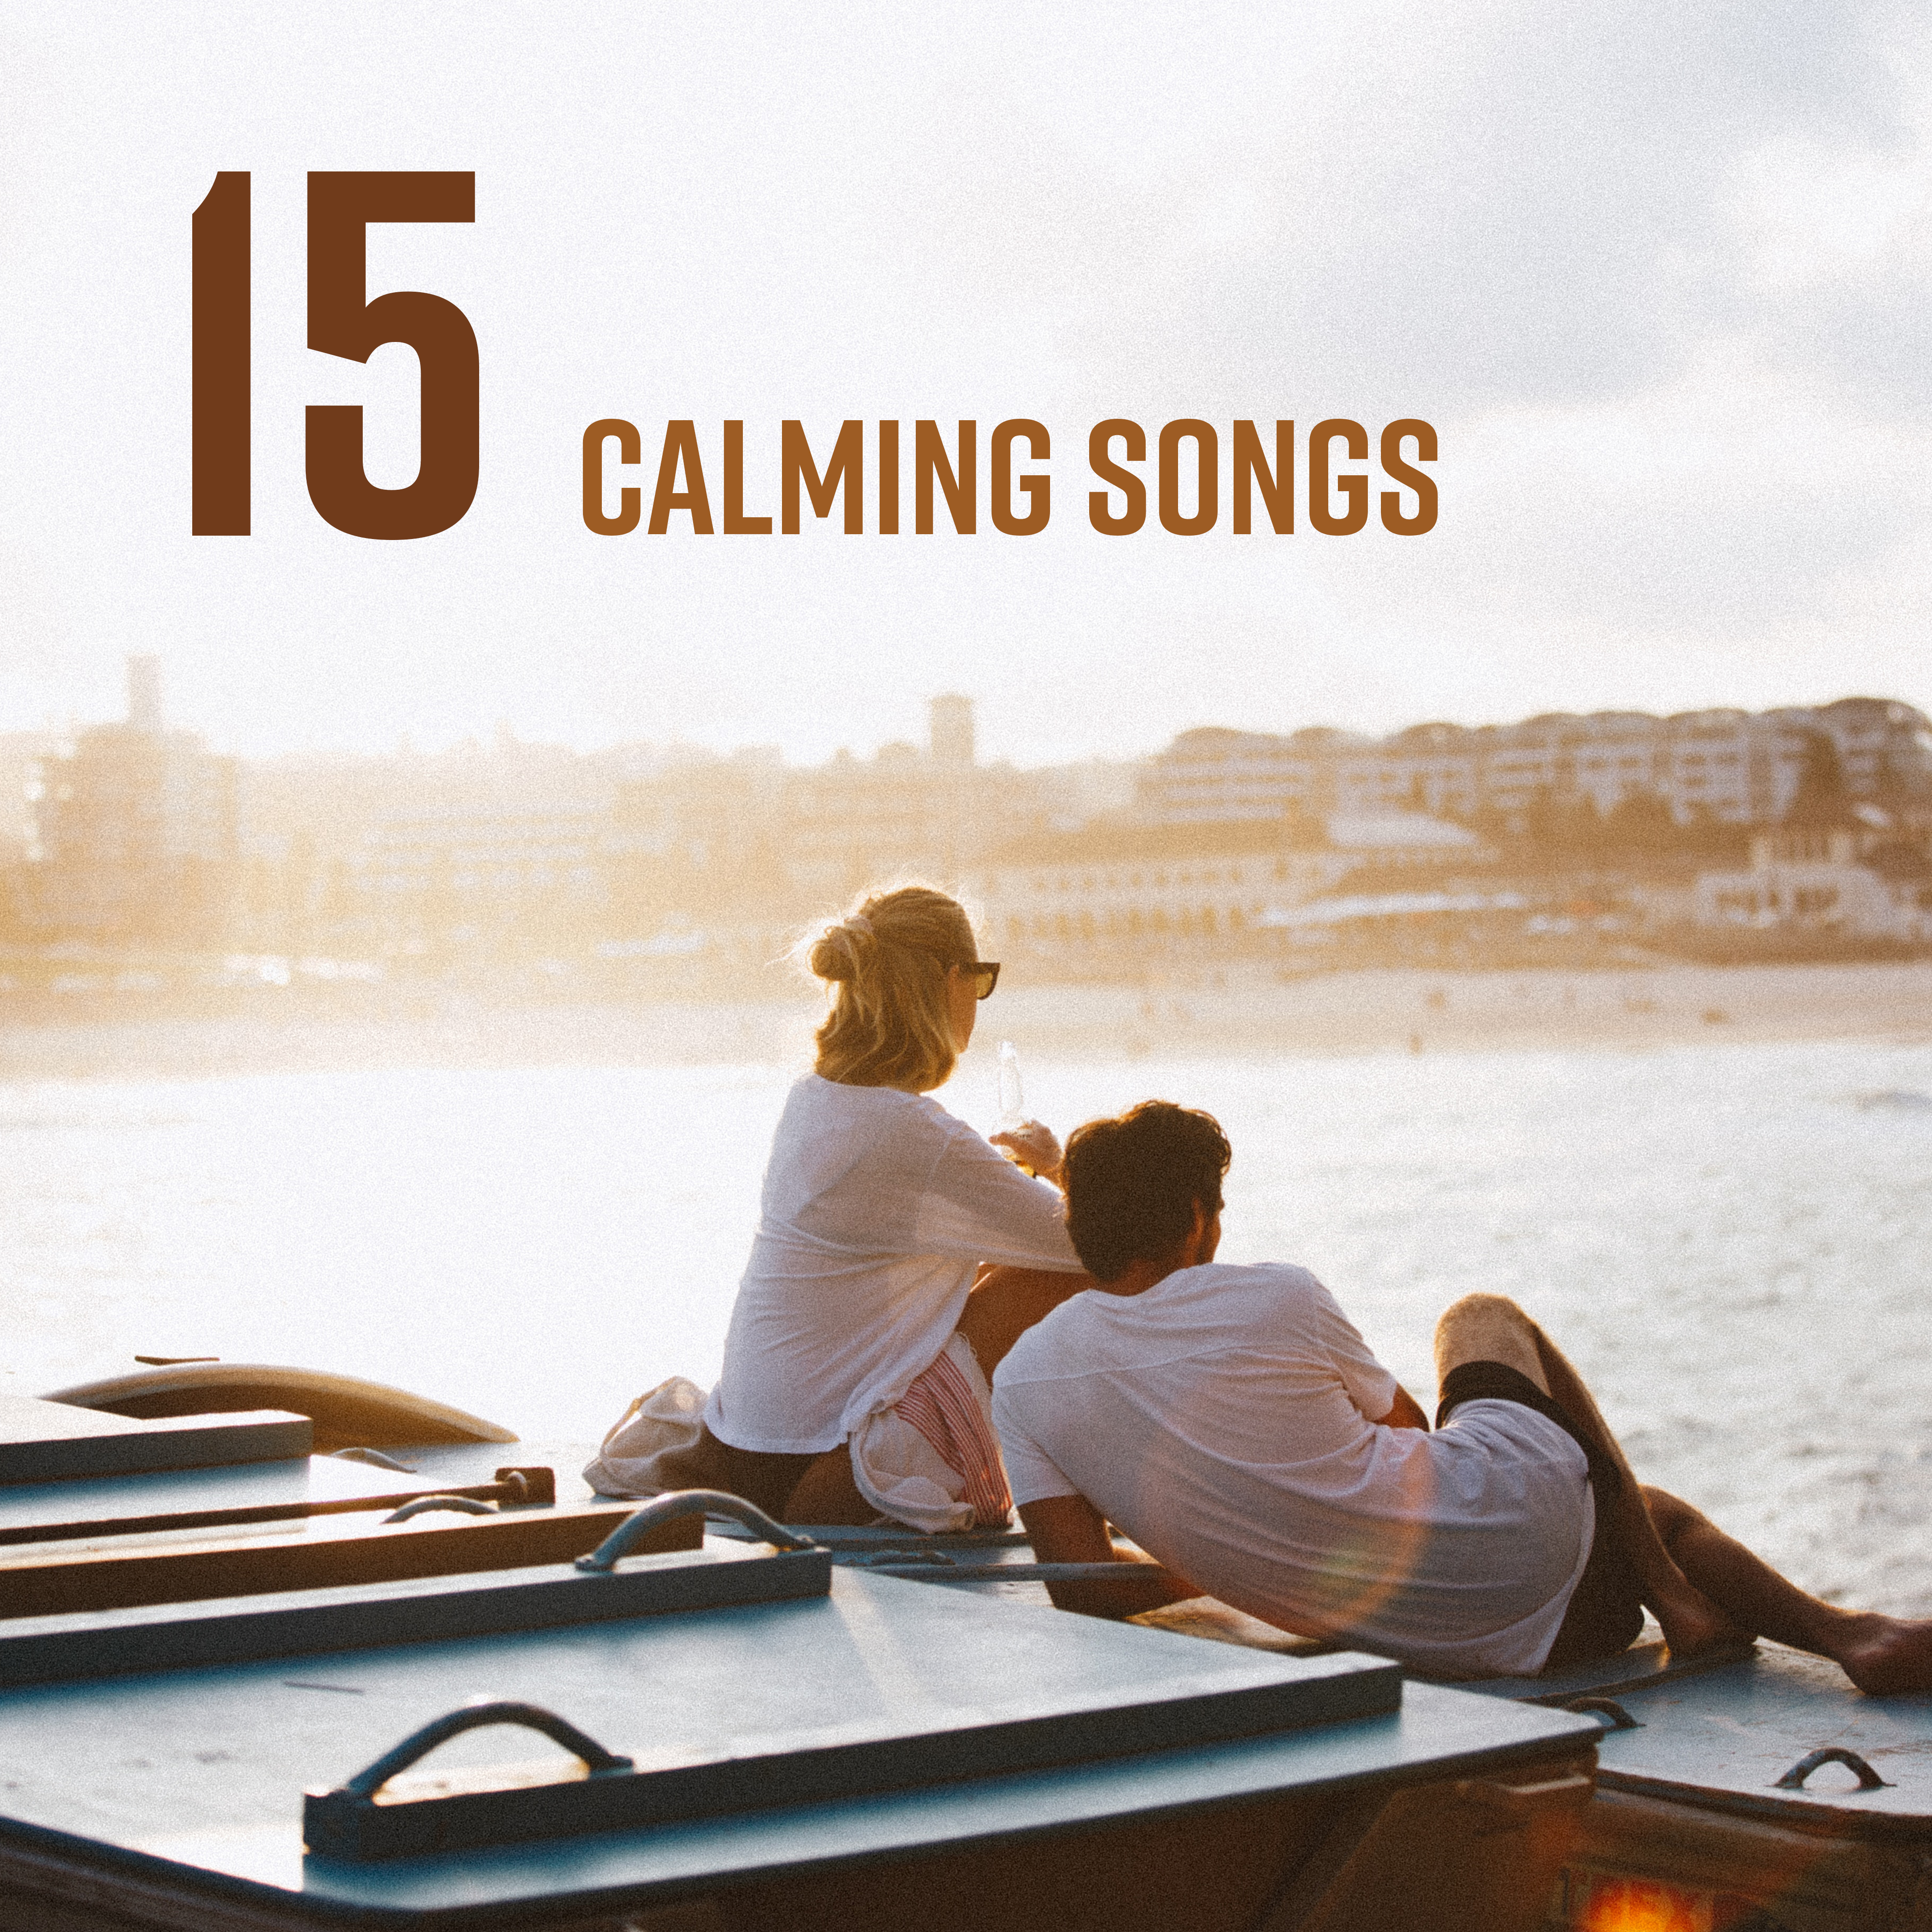 15 Calming Songs